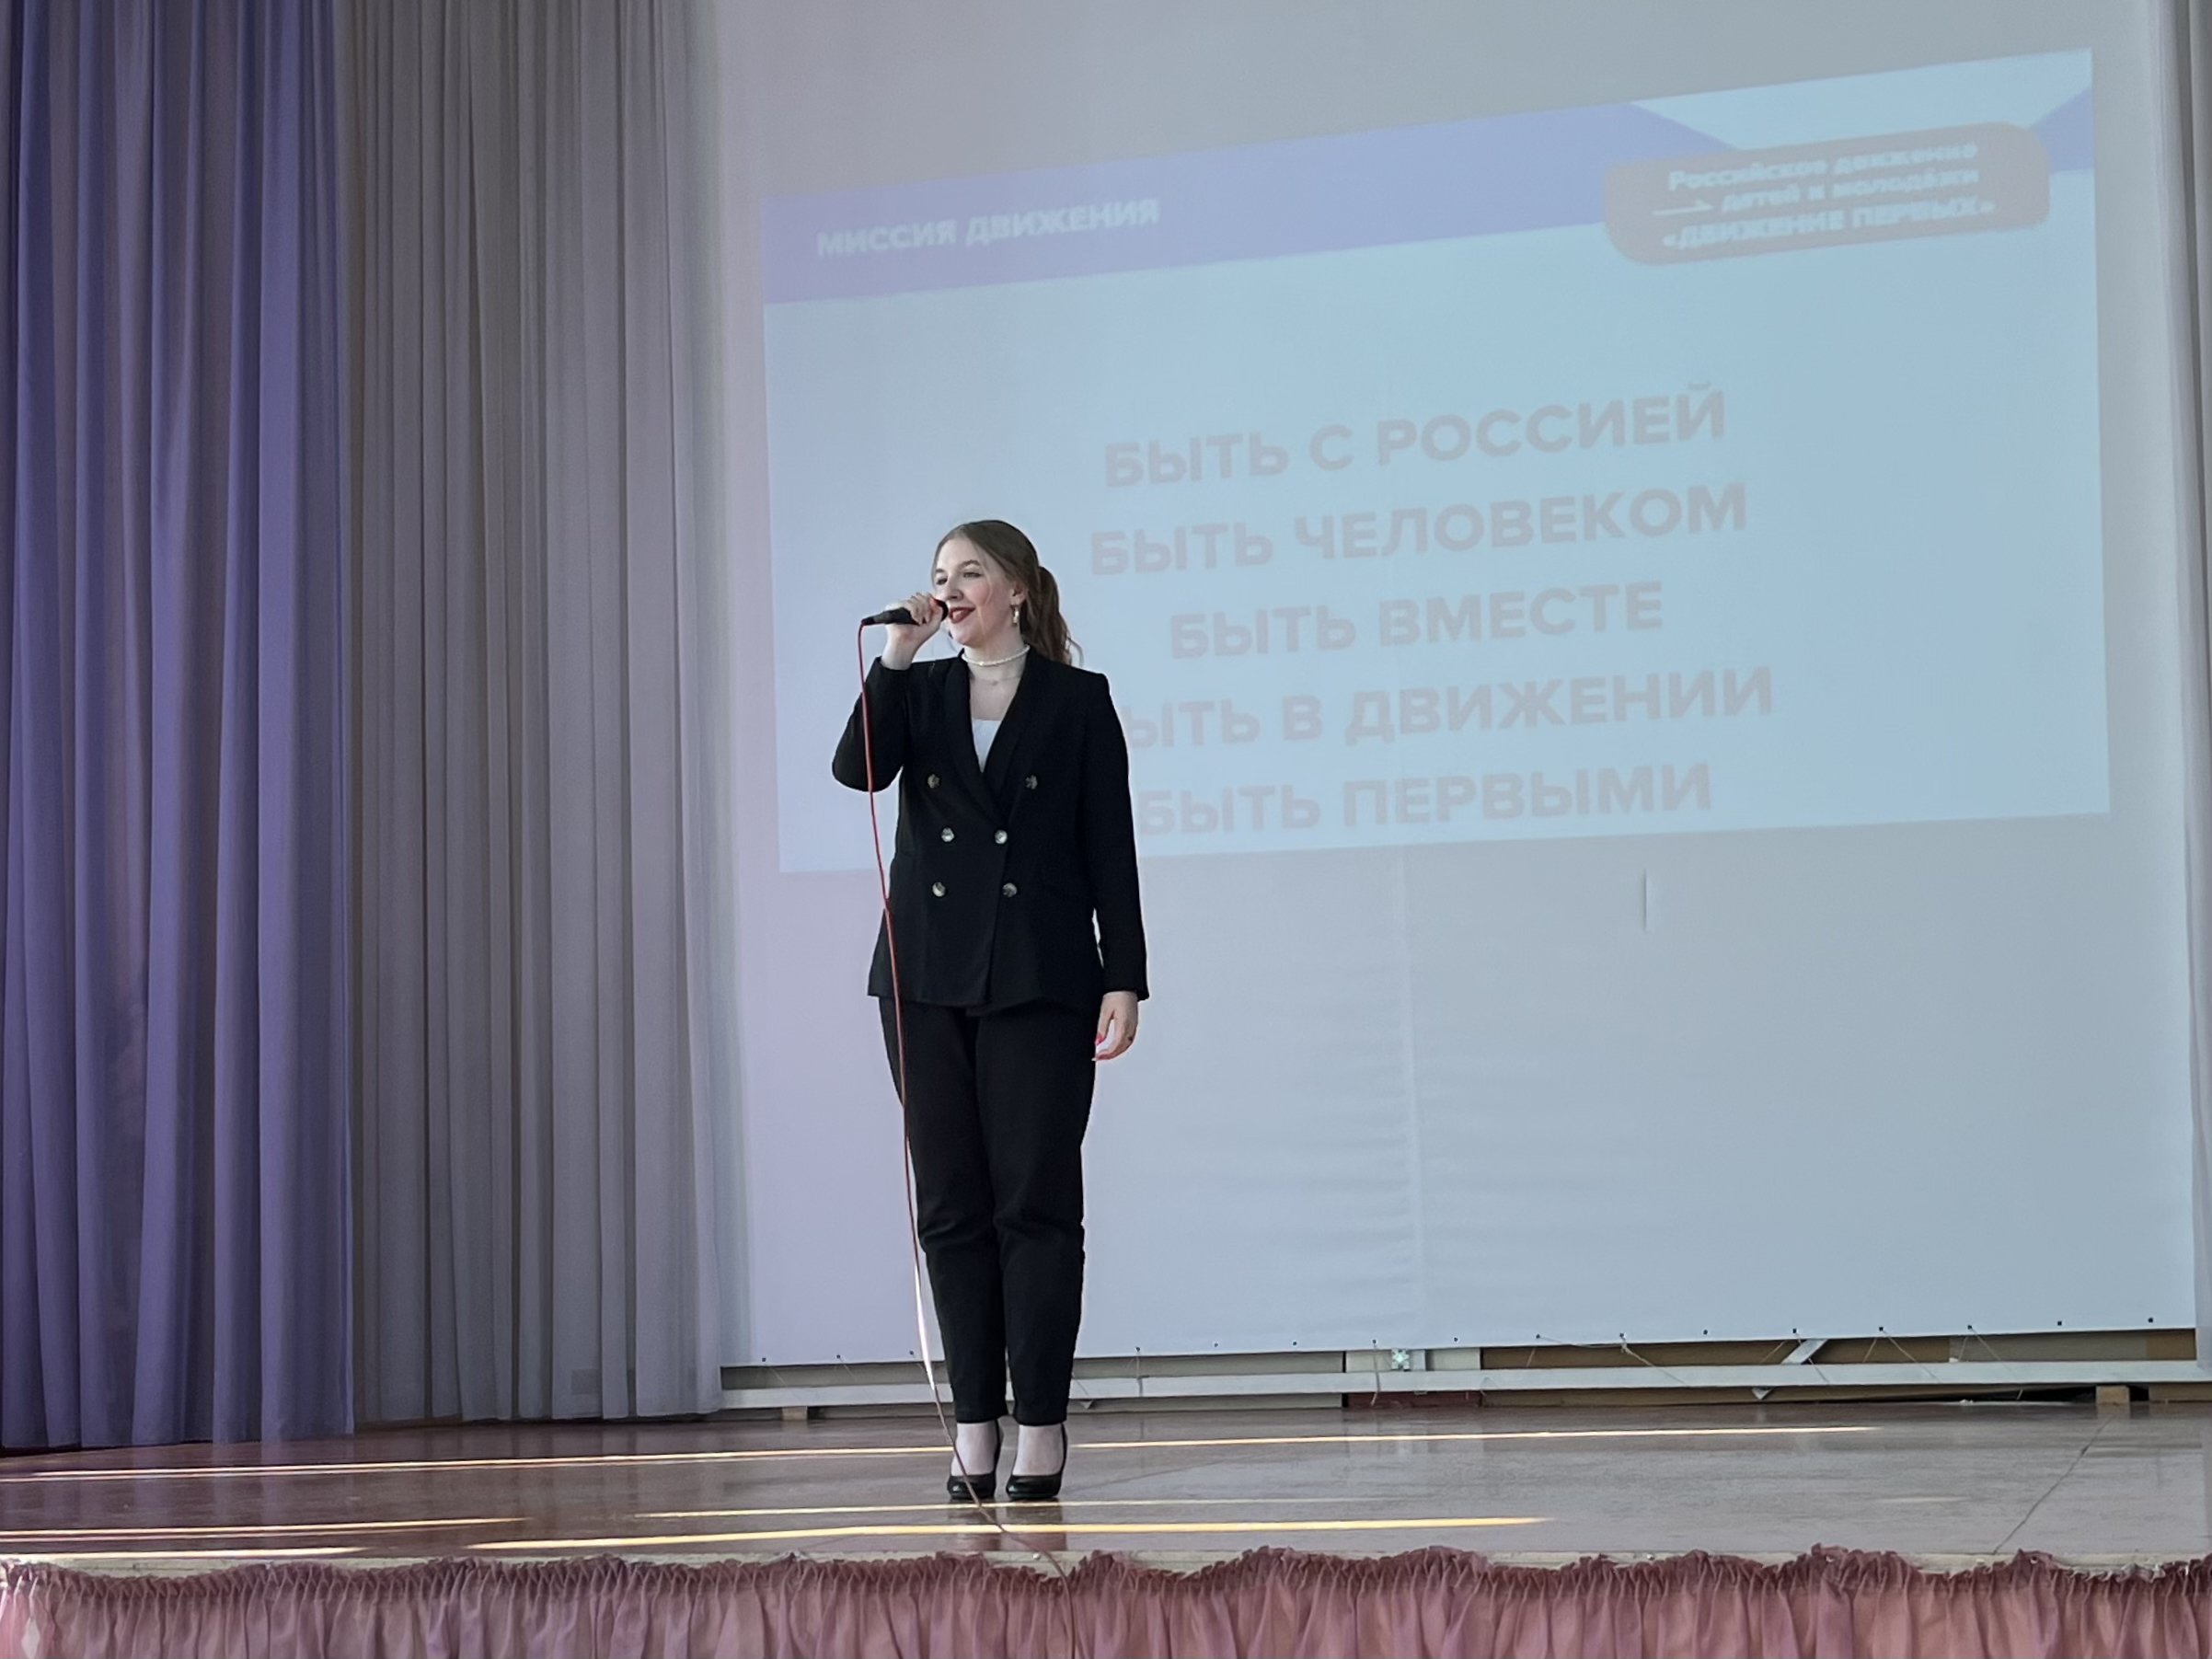 Открытие первичного отделения Российского движения детей и молодежи.